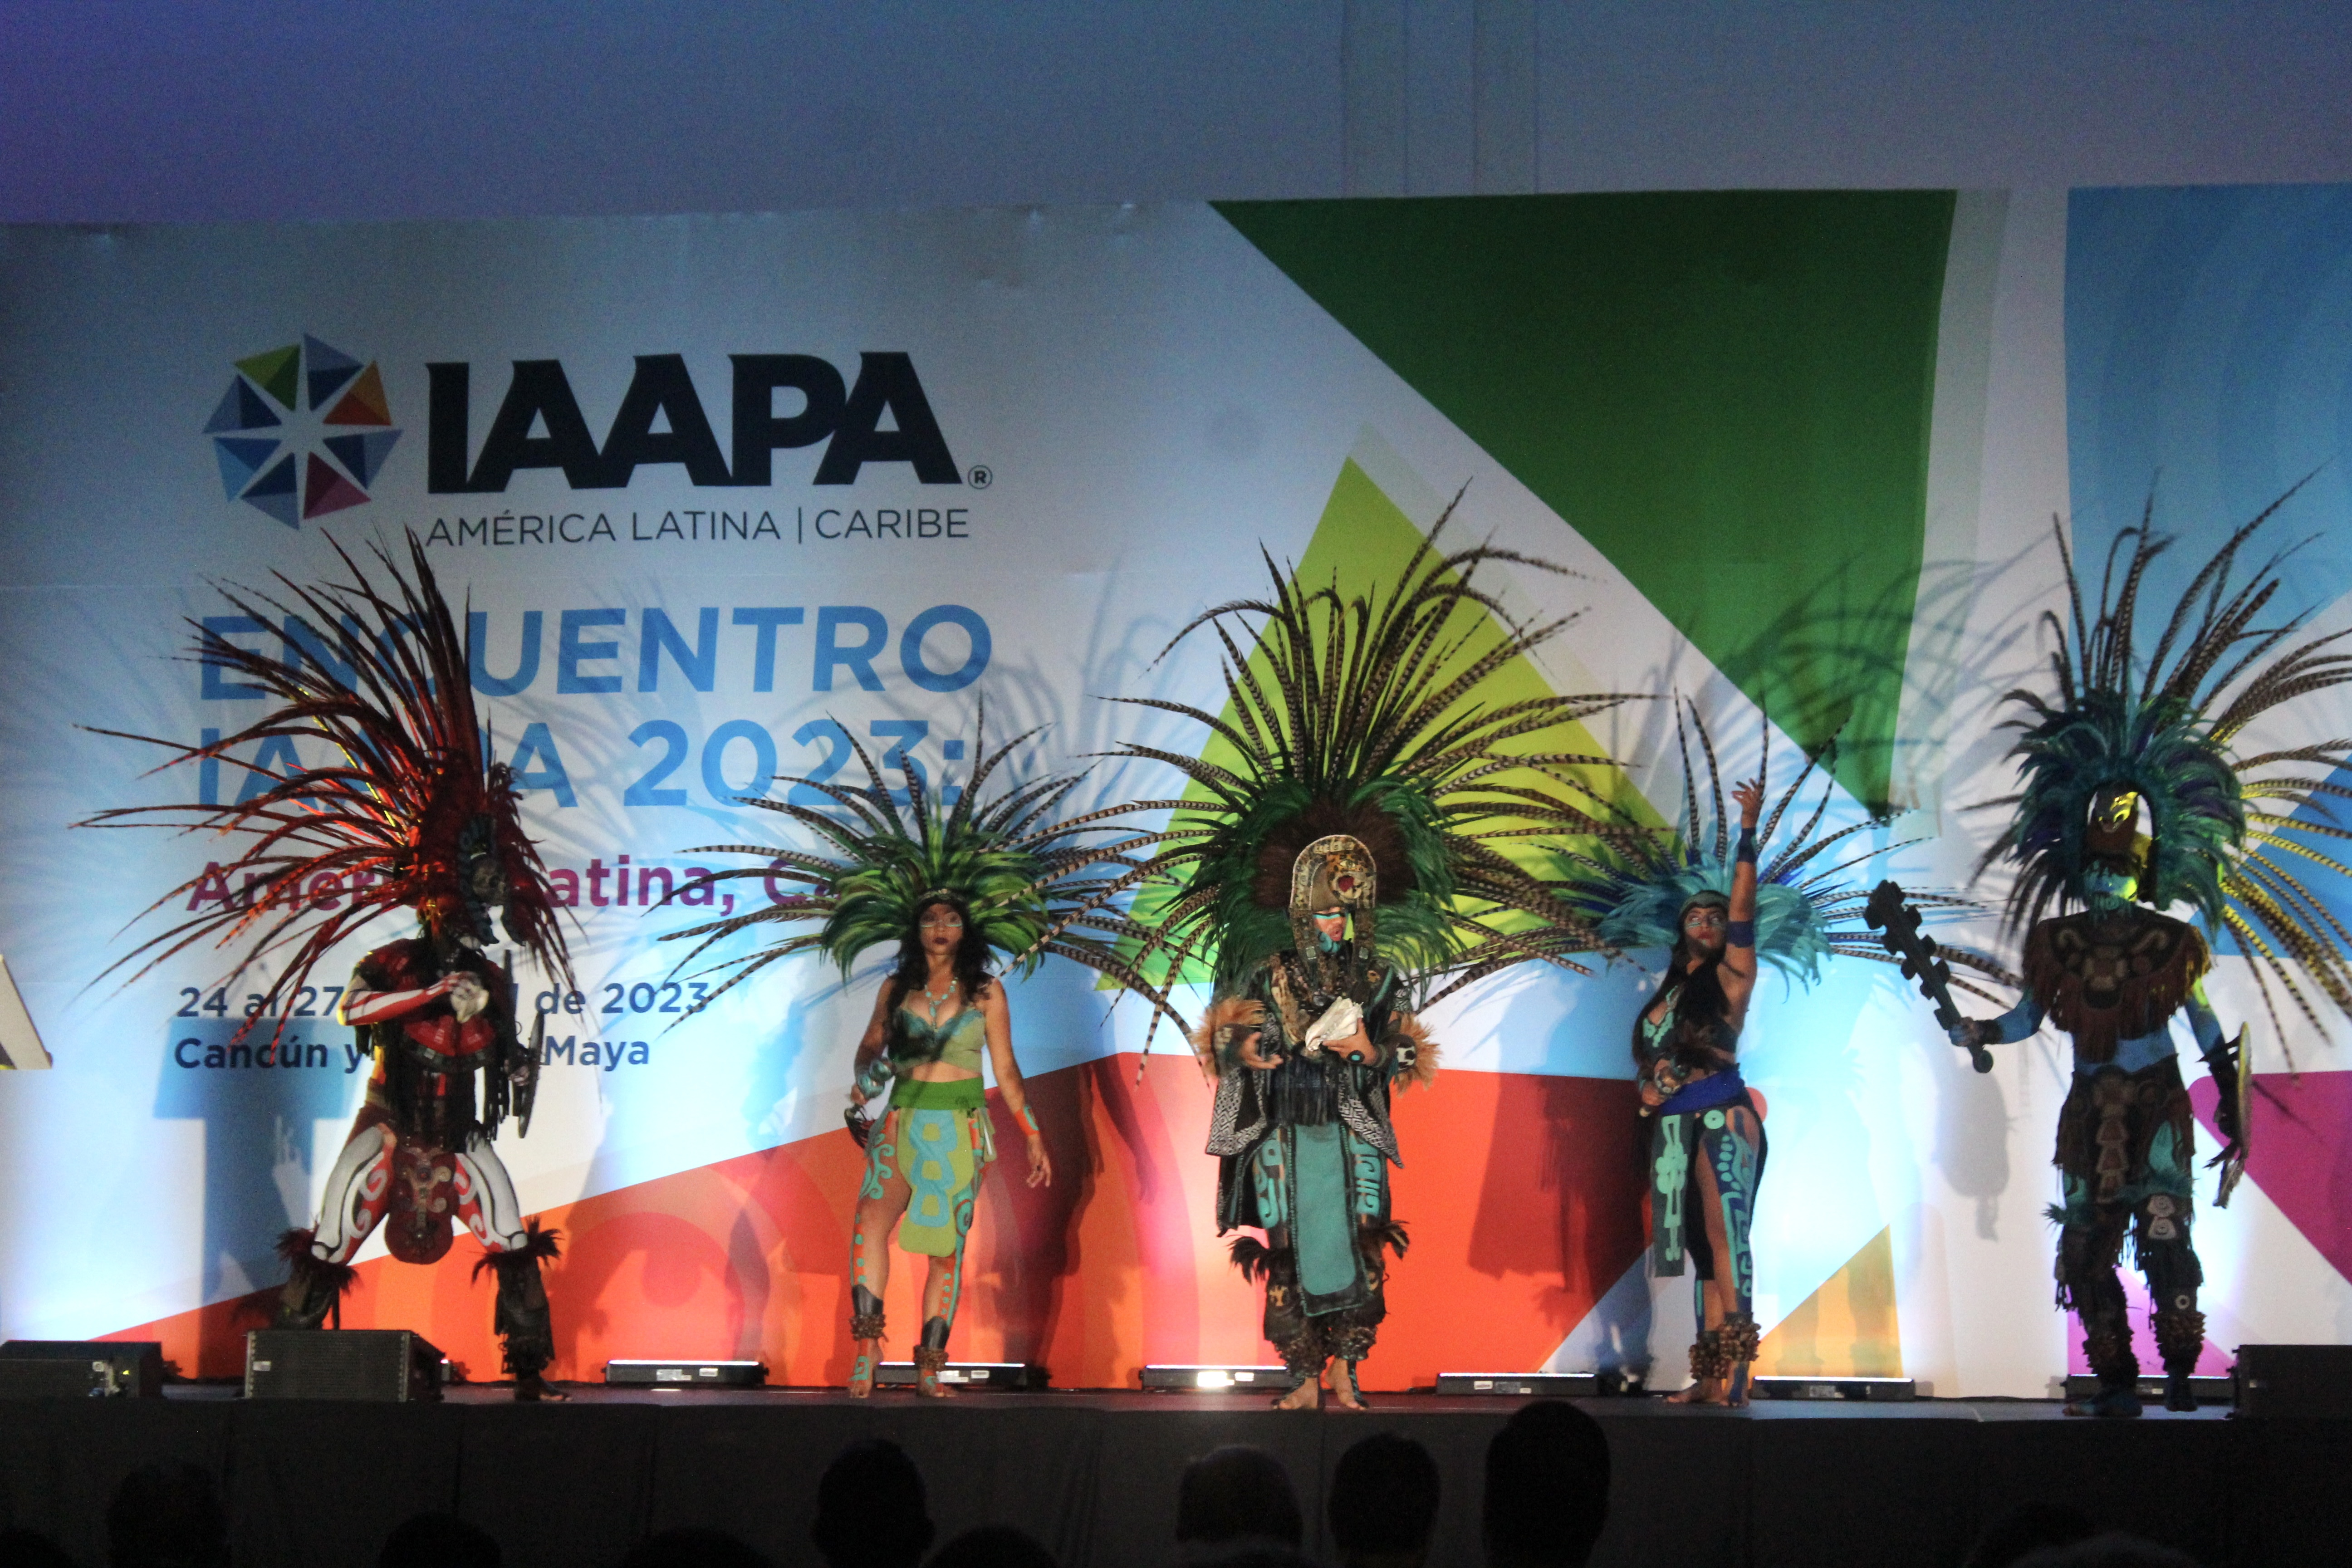 "I ballerini eseguono un Concheros messicano regionale per aprire il vertice dell'America Latina IAAPA".